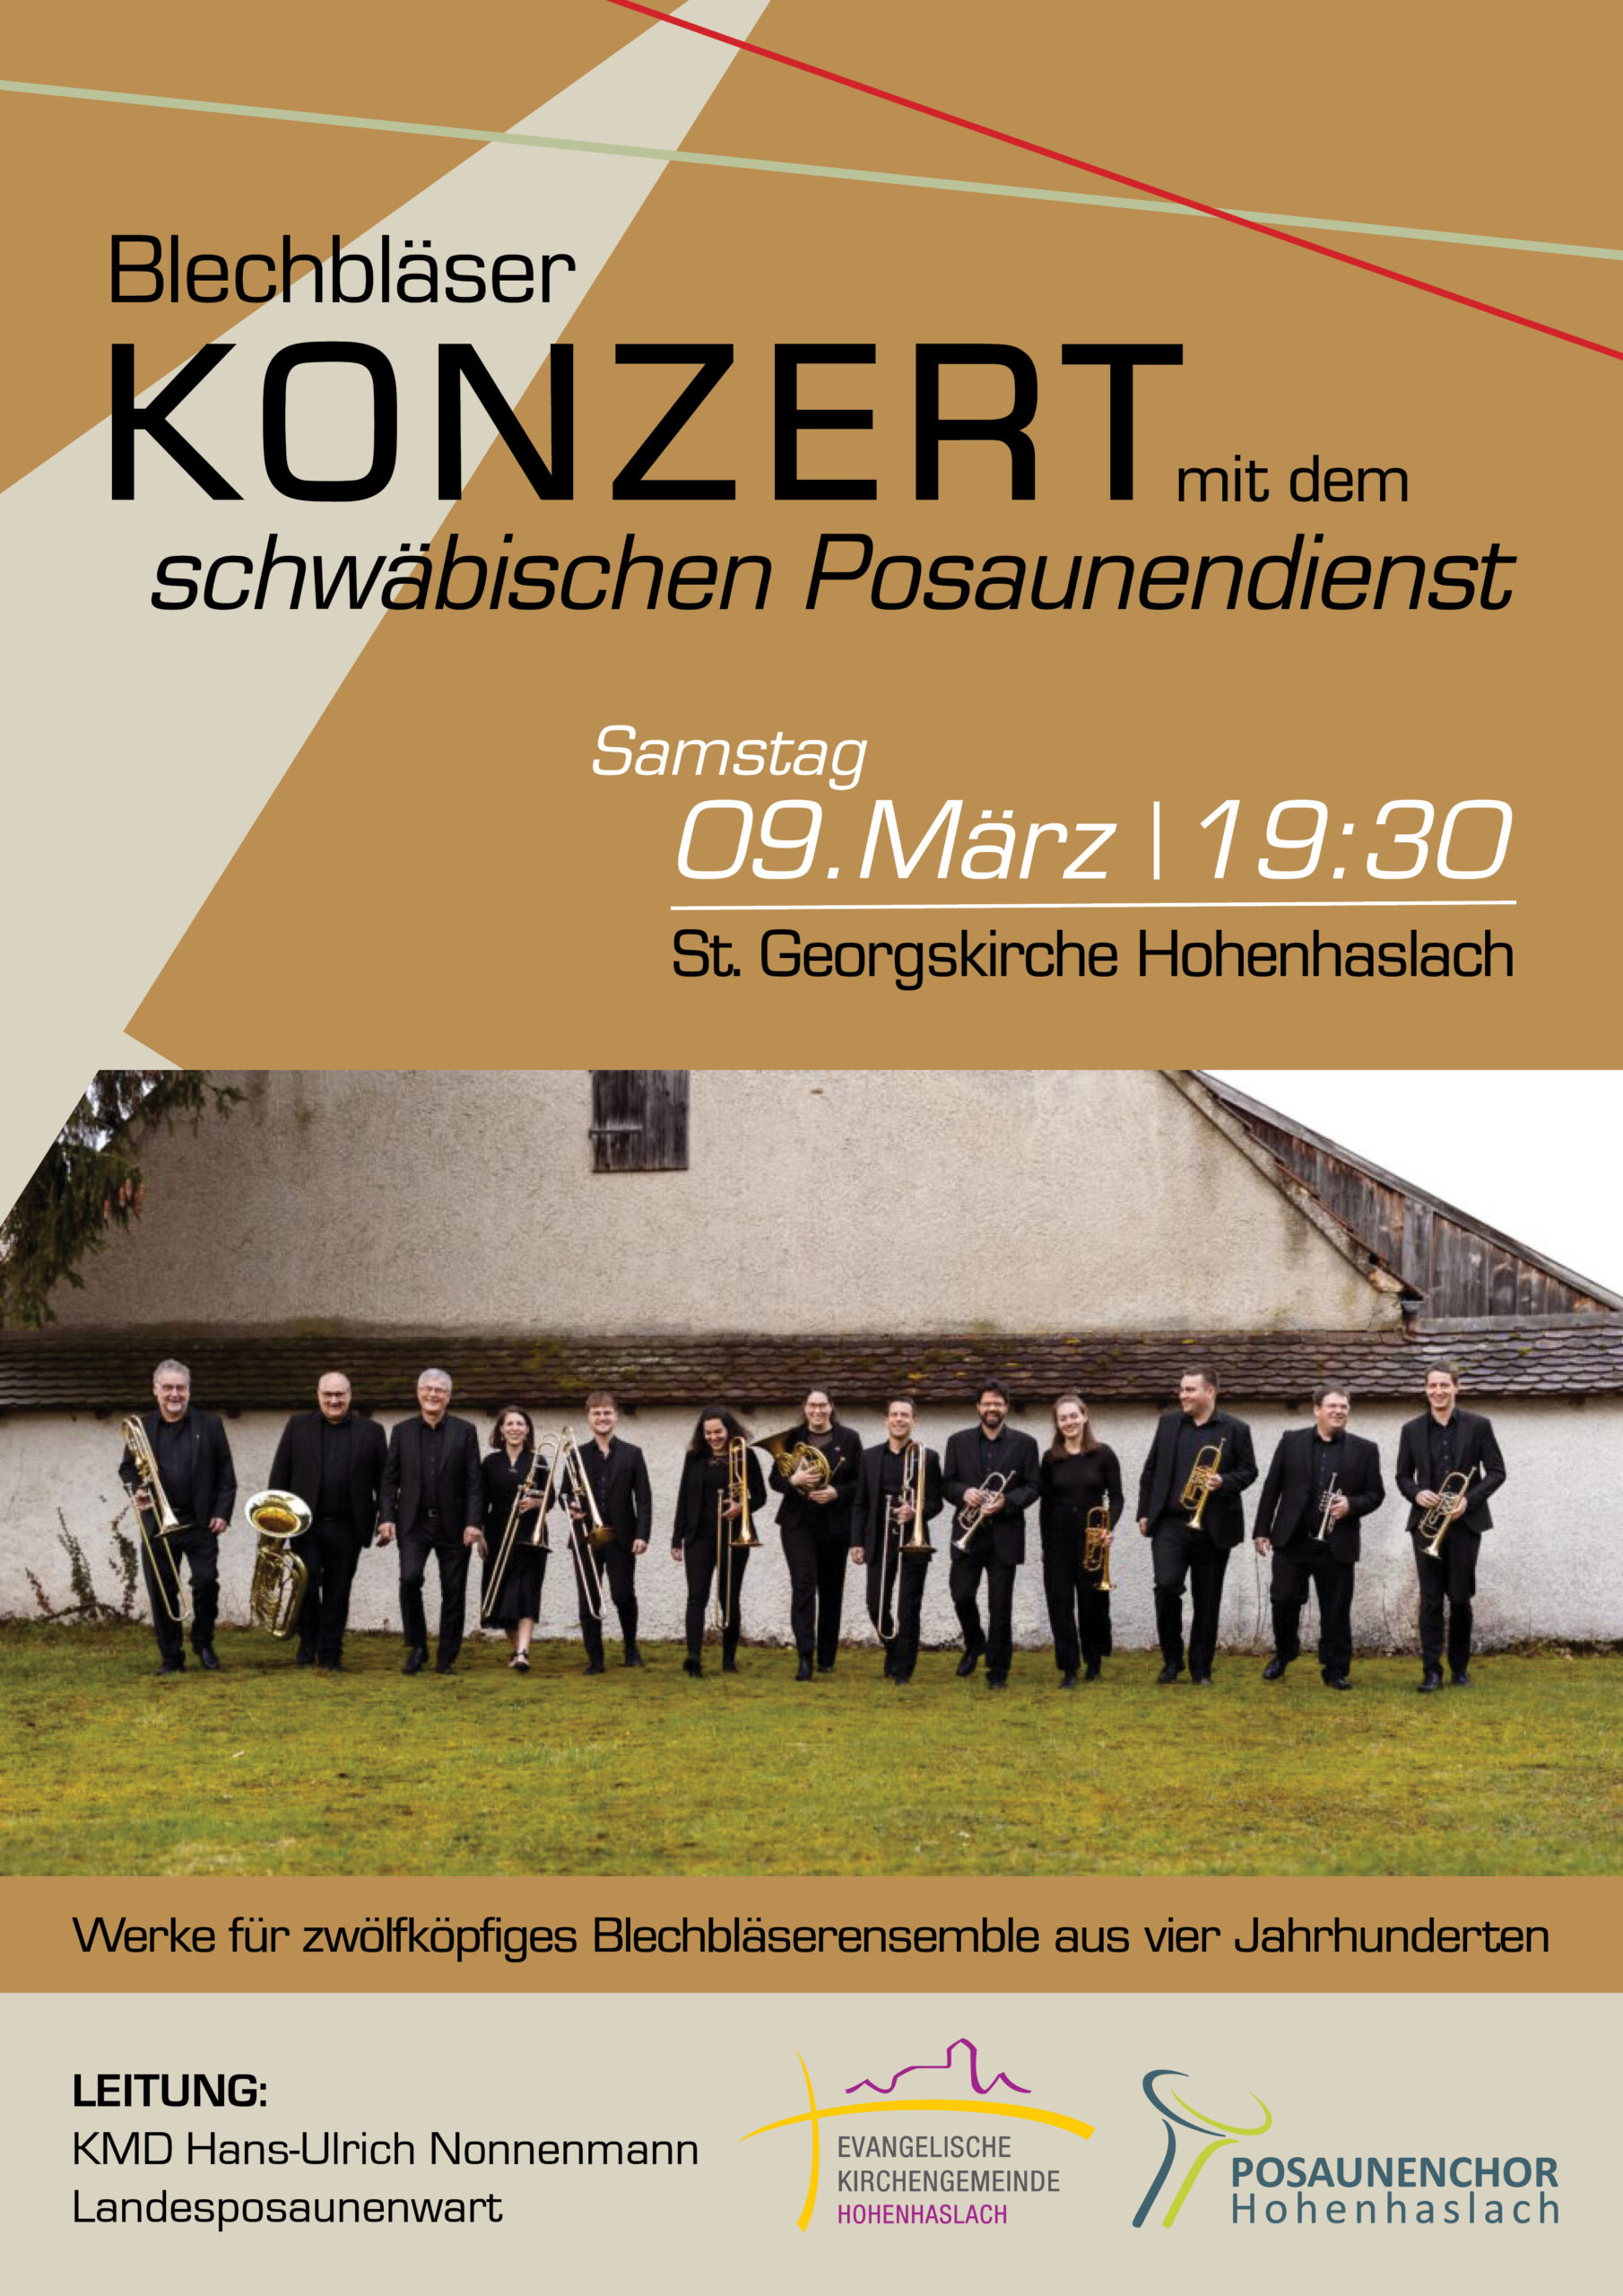 Featured image for “Konzert Schwäbischer Posaunendienst”